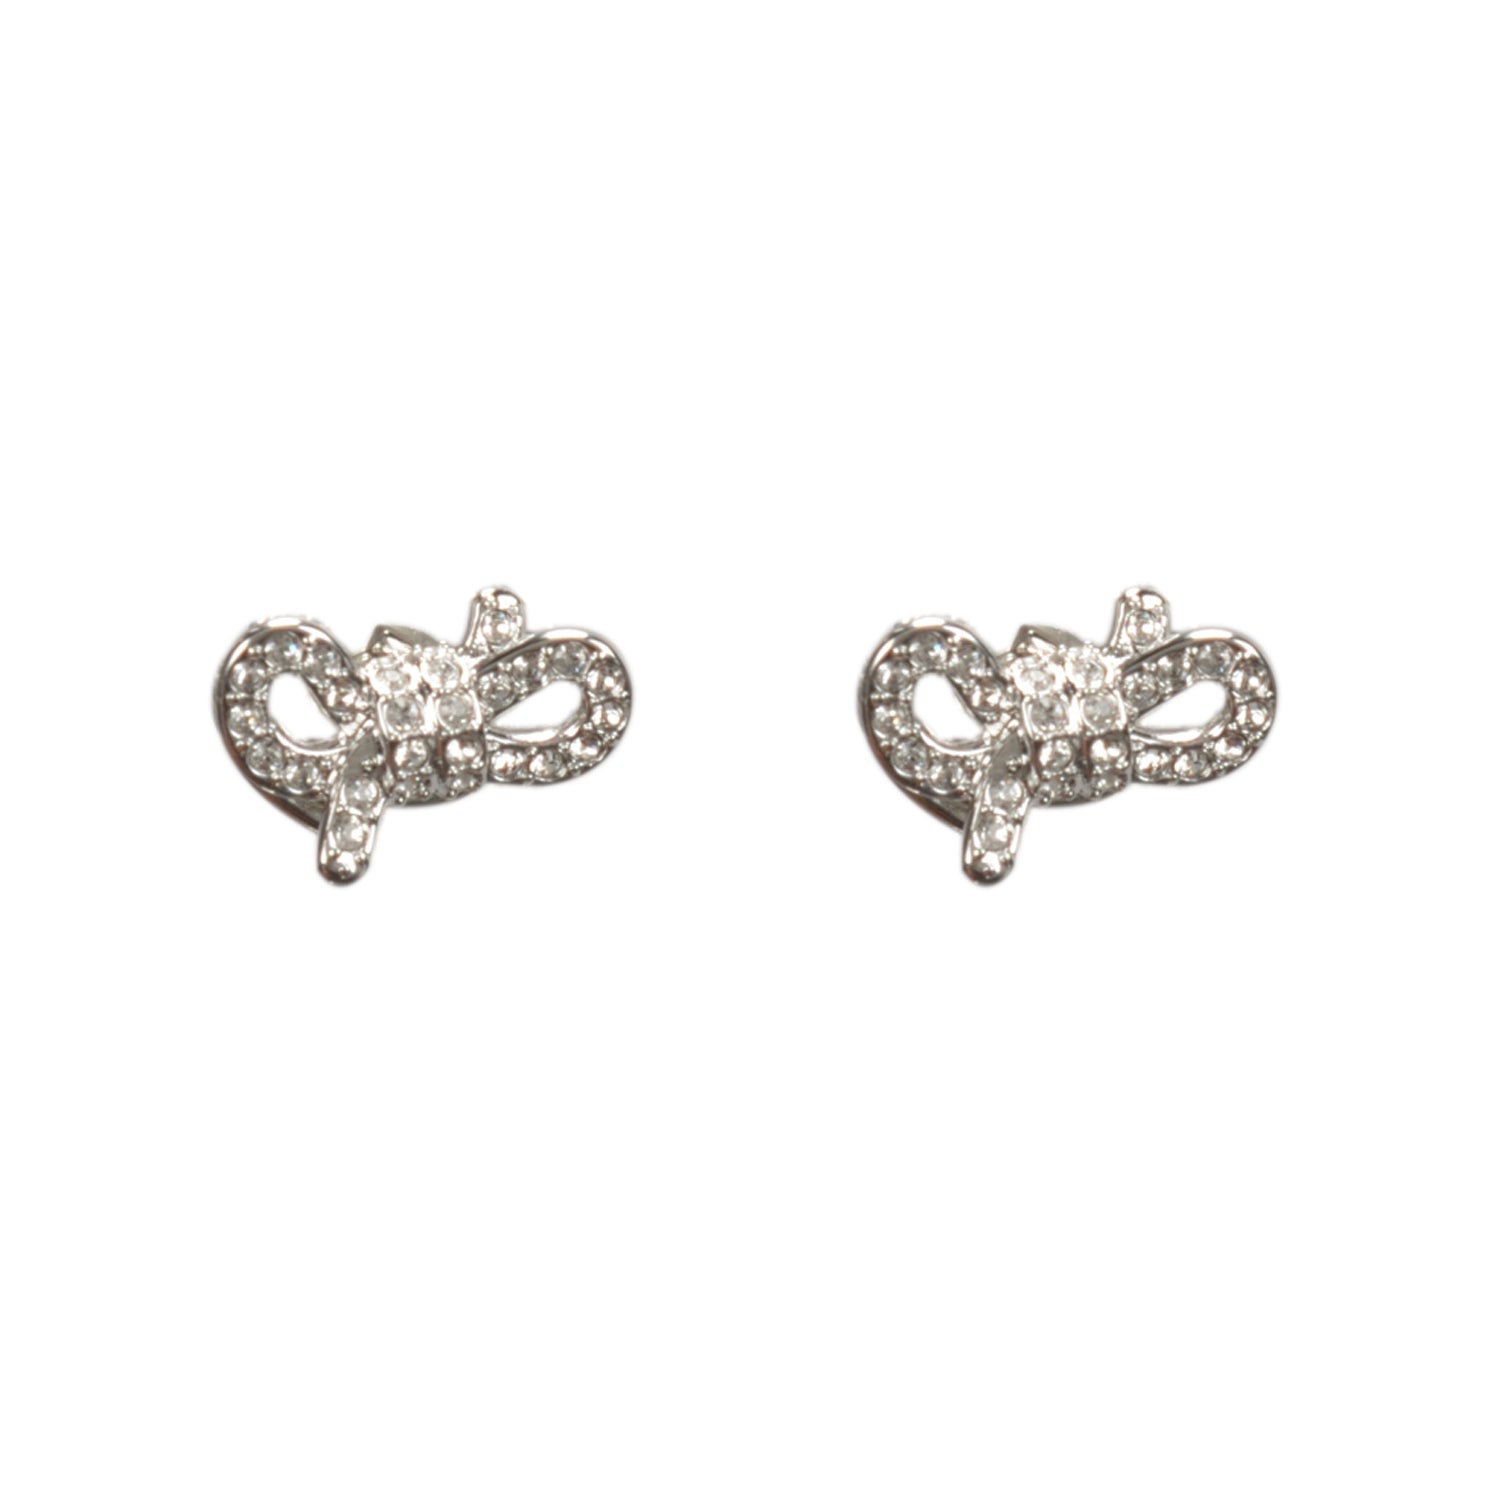 Shop Luxury Swarovski Necklace Set Online